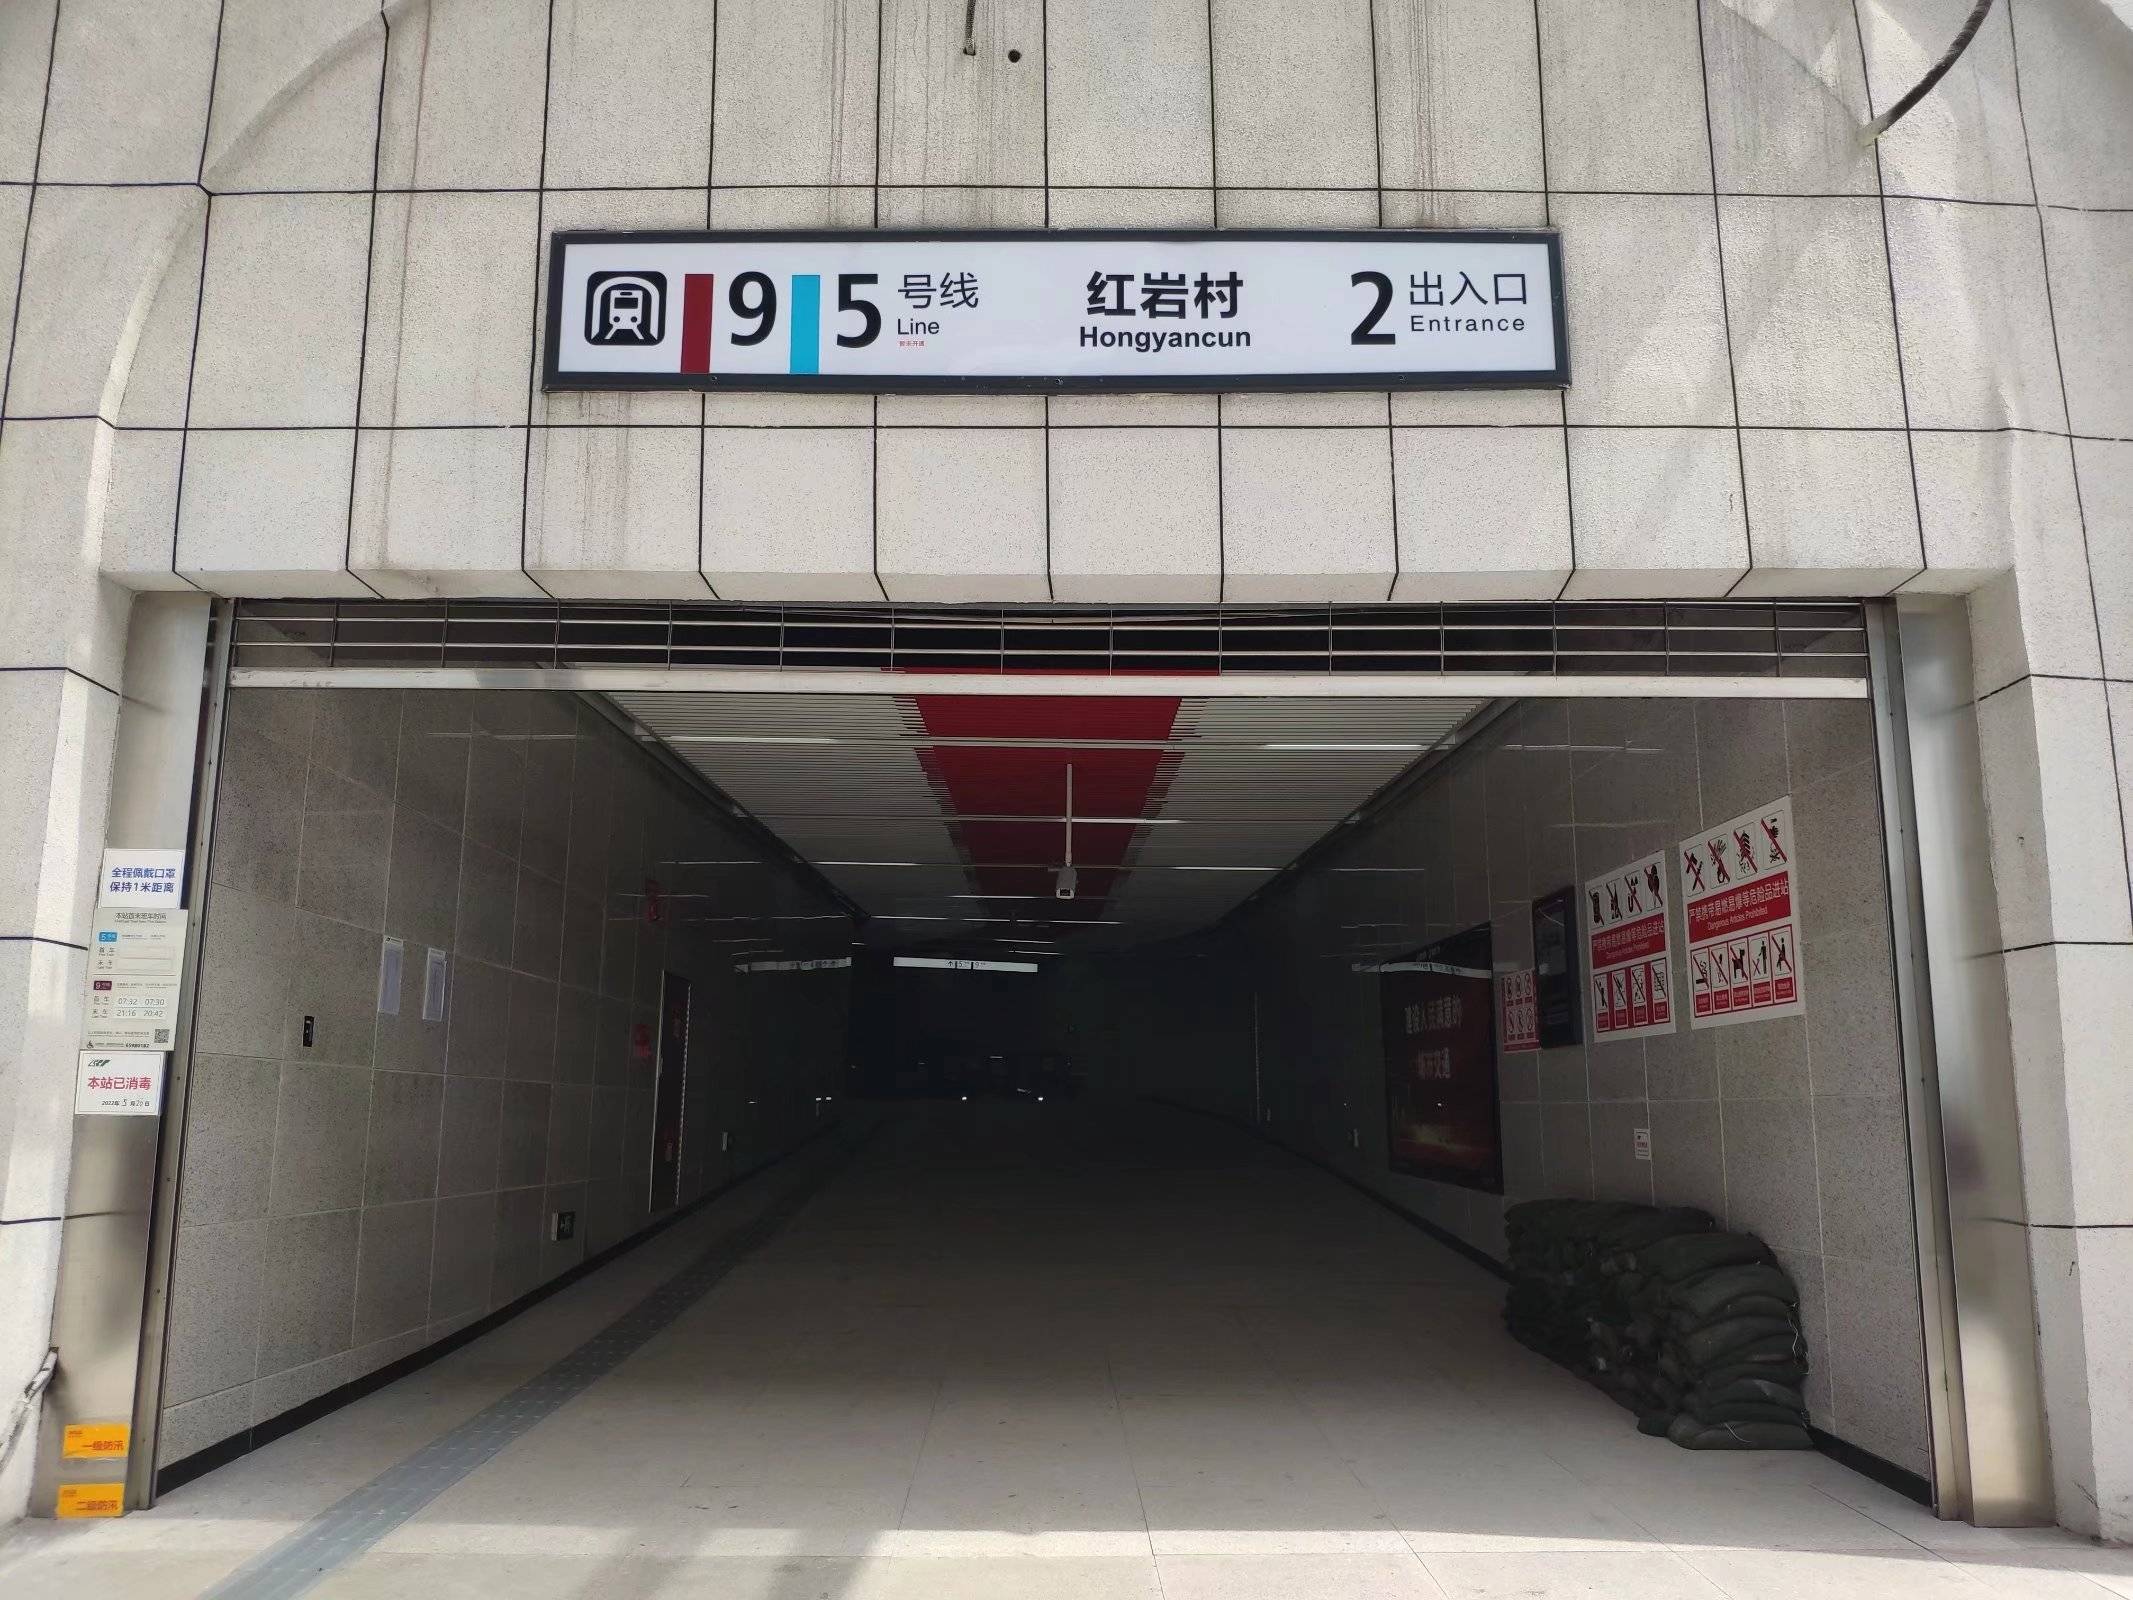 原创重庆红岩村地铁站成全国最深地铁站深116米相当于39层楼高